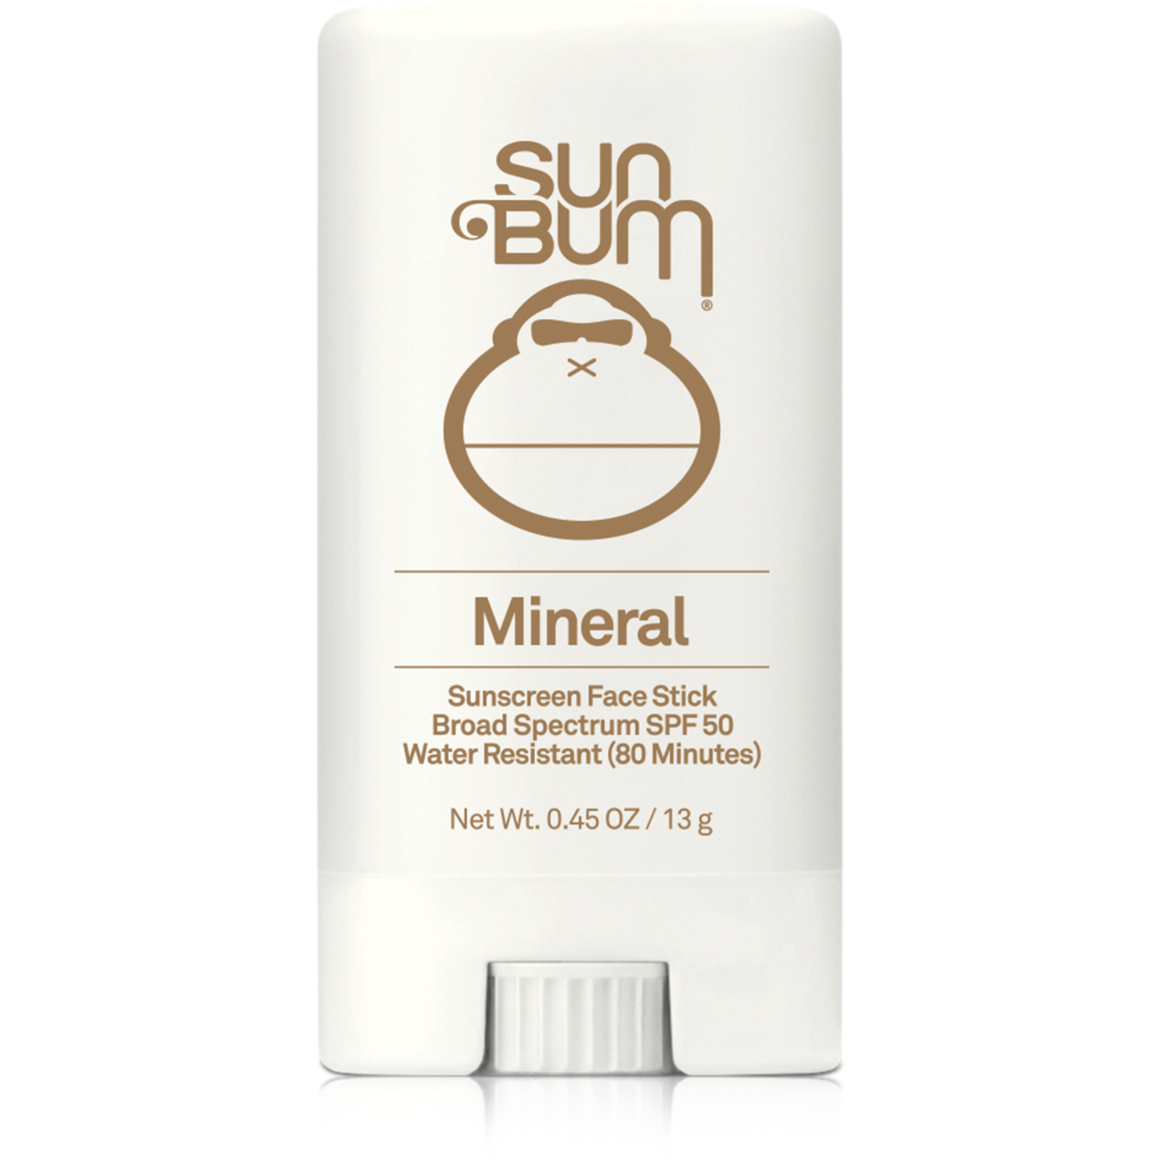 Sun Bum Mineral SPF 50 Sunscreen Face Stick - 0.45oz